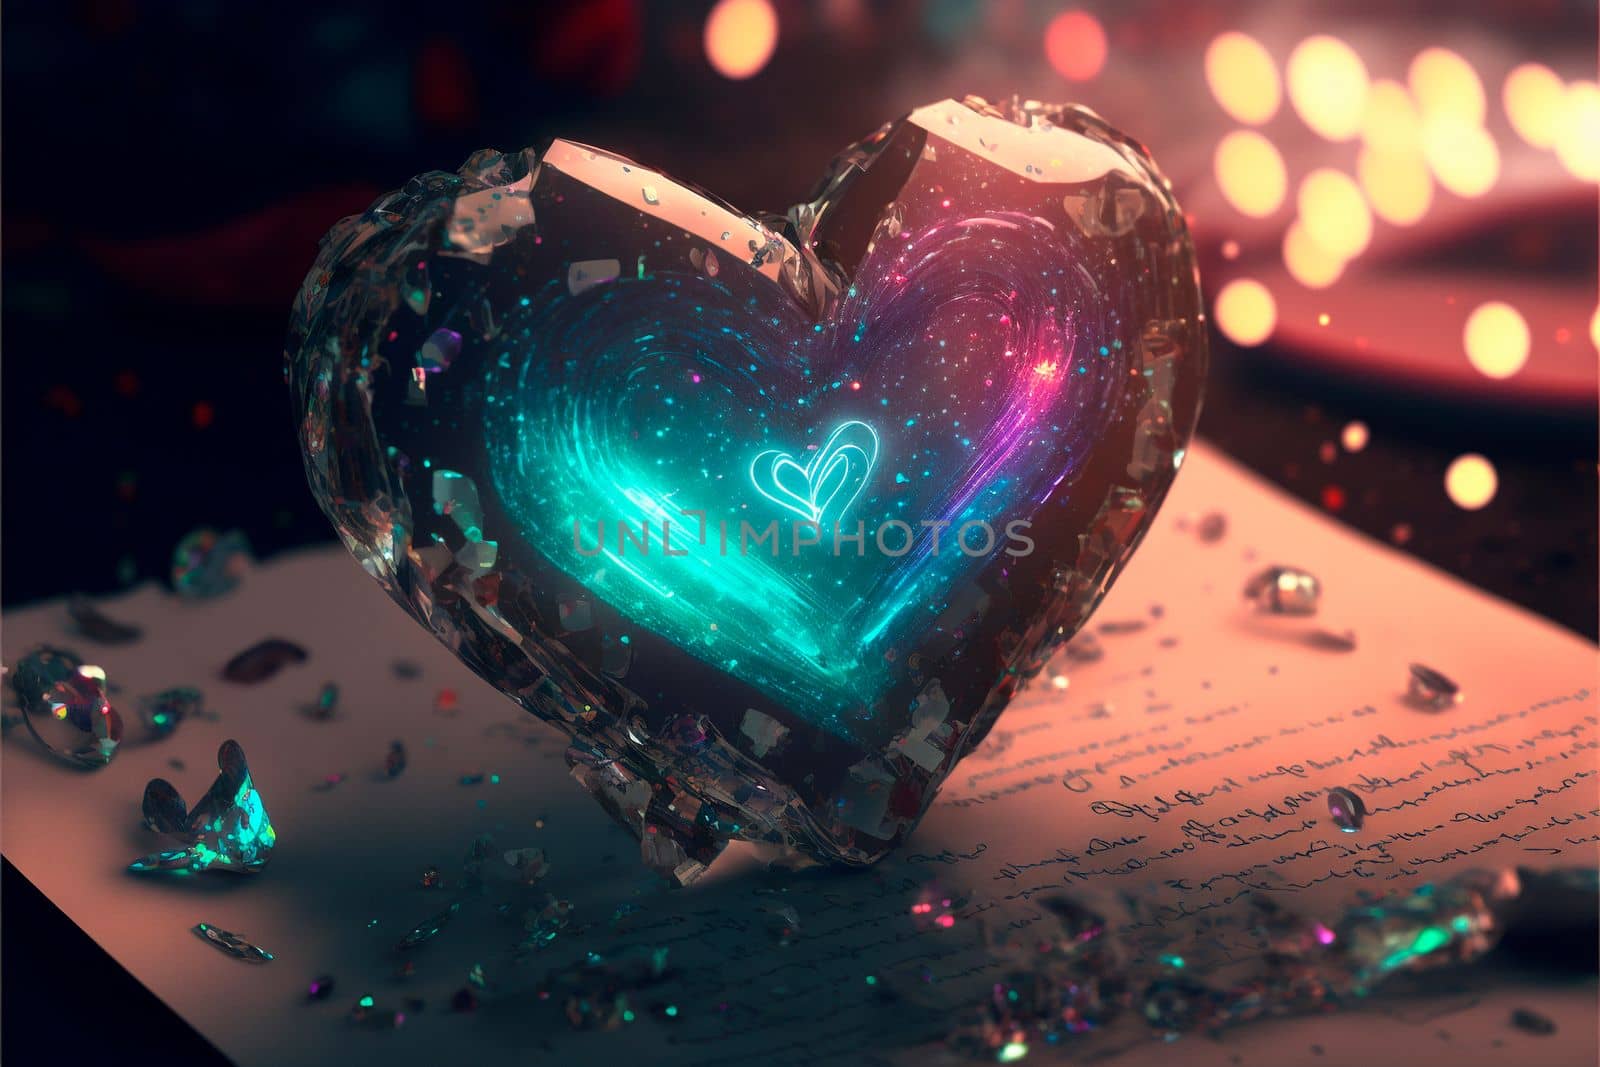 Glowing electronic heart on a letter. Cyberpunk style heart by NeuroSky